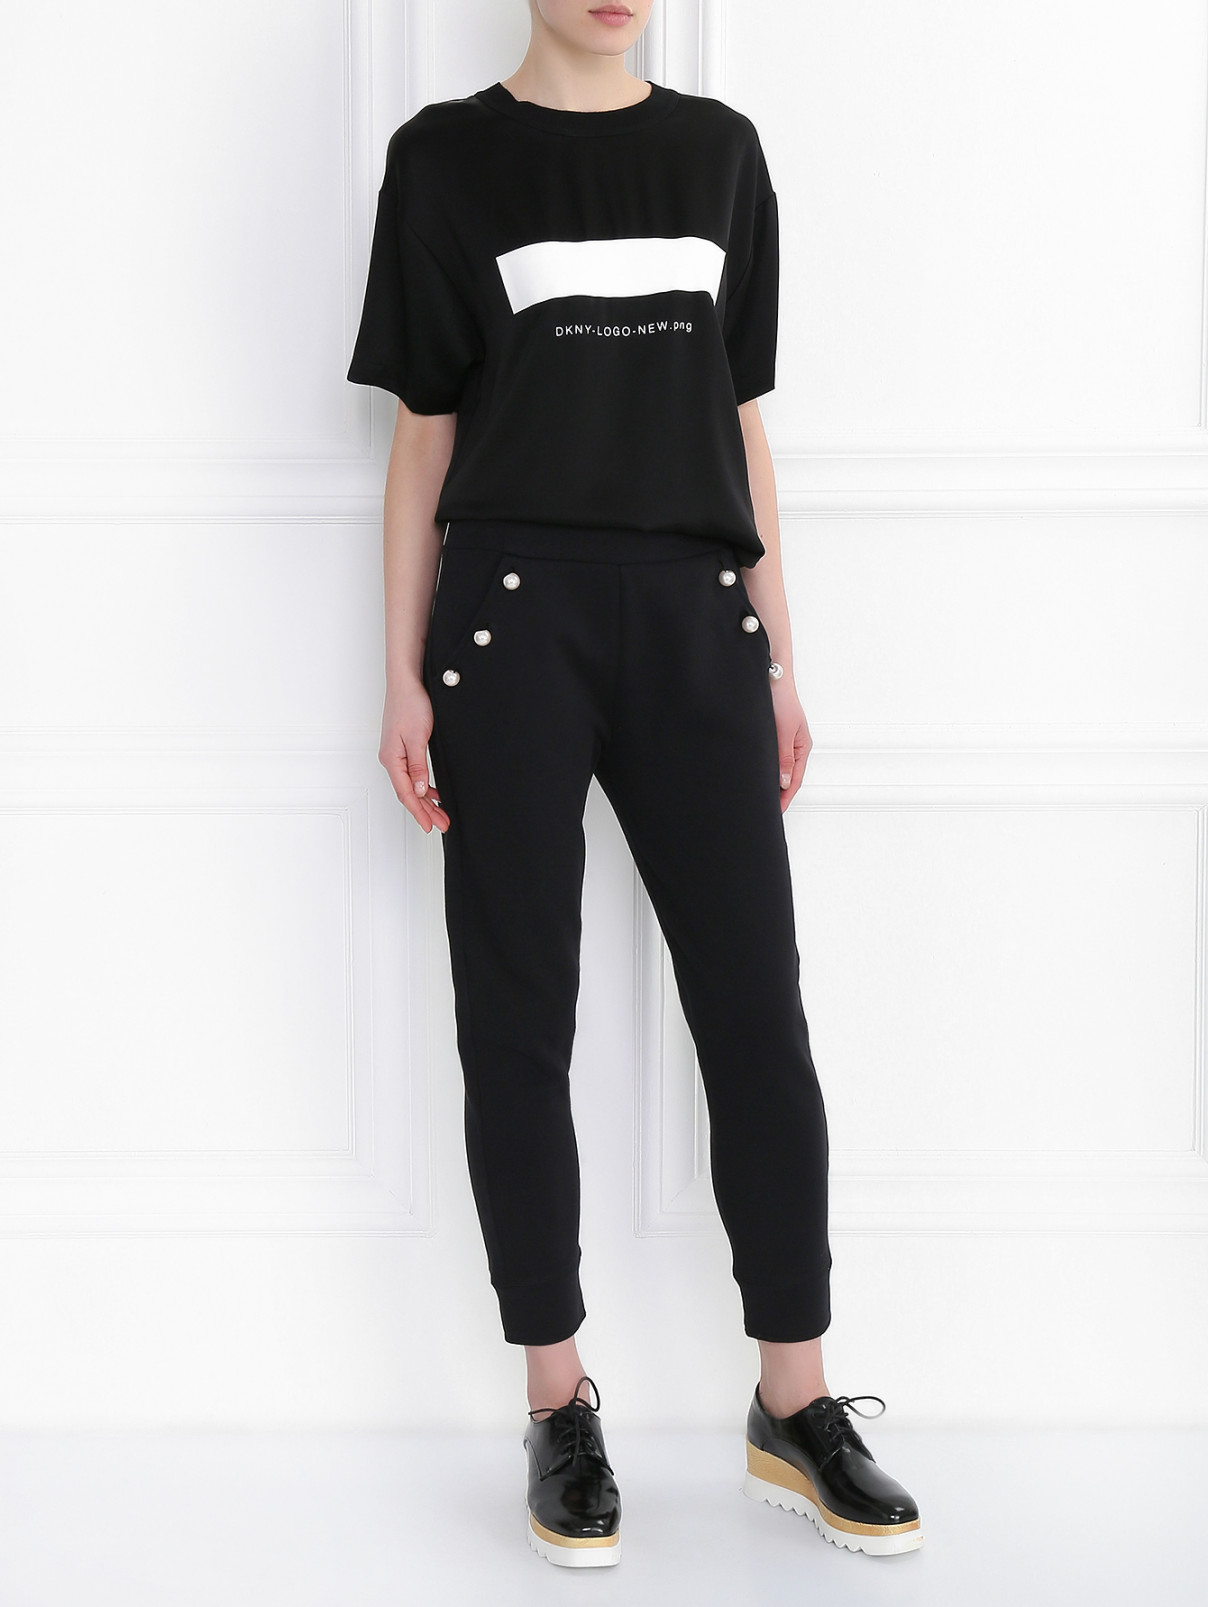 Спортивные брюки из хлопка с декоративной отделкой Moschino Boutique  –  Модель Общий вид  – Цвет:  Черный